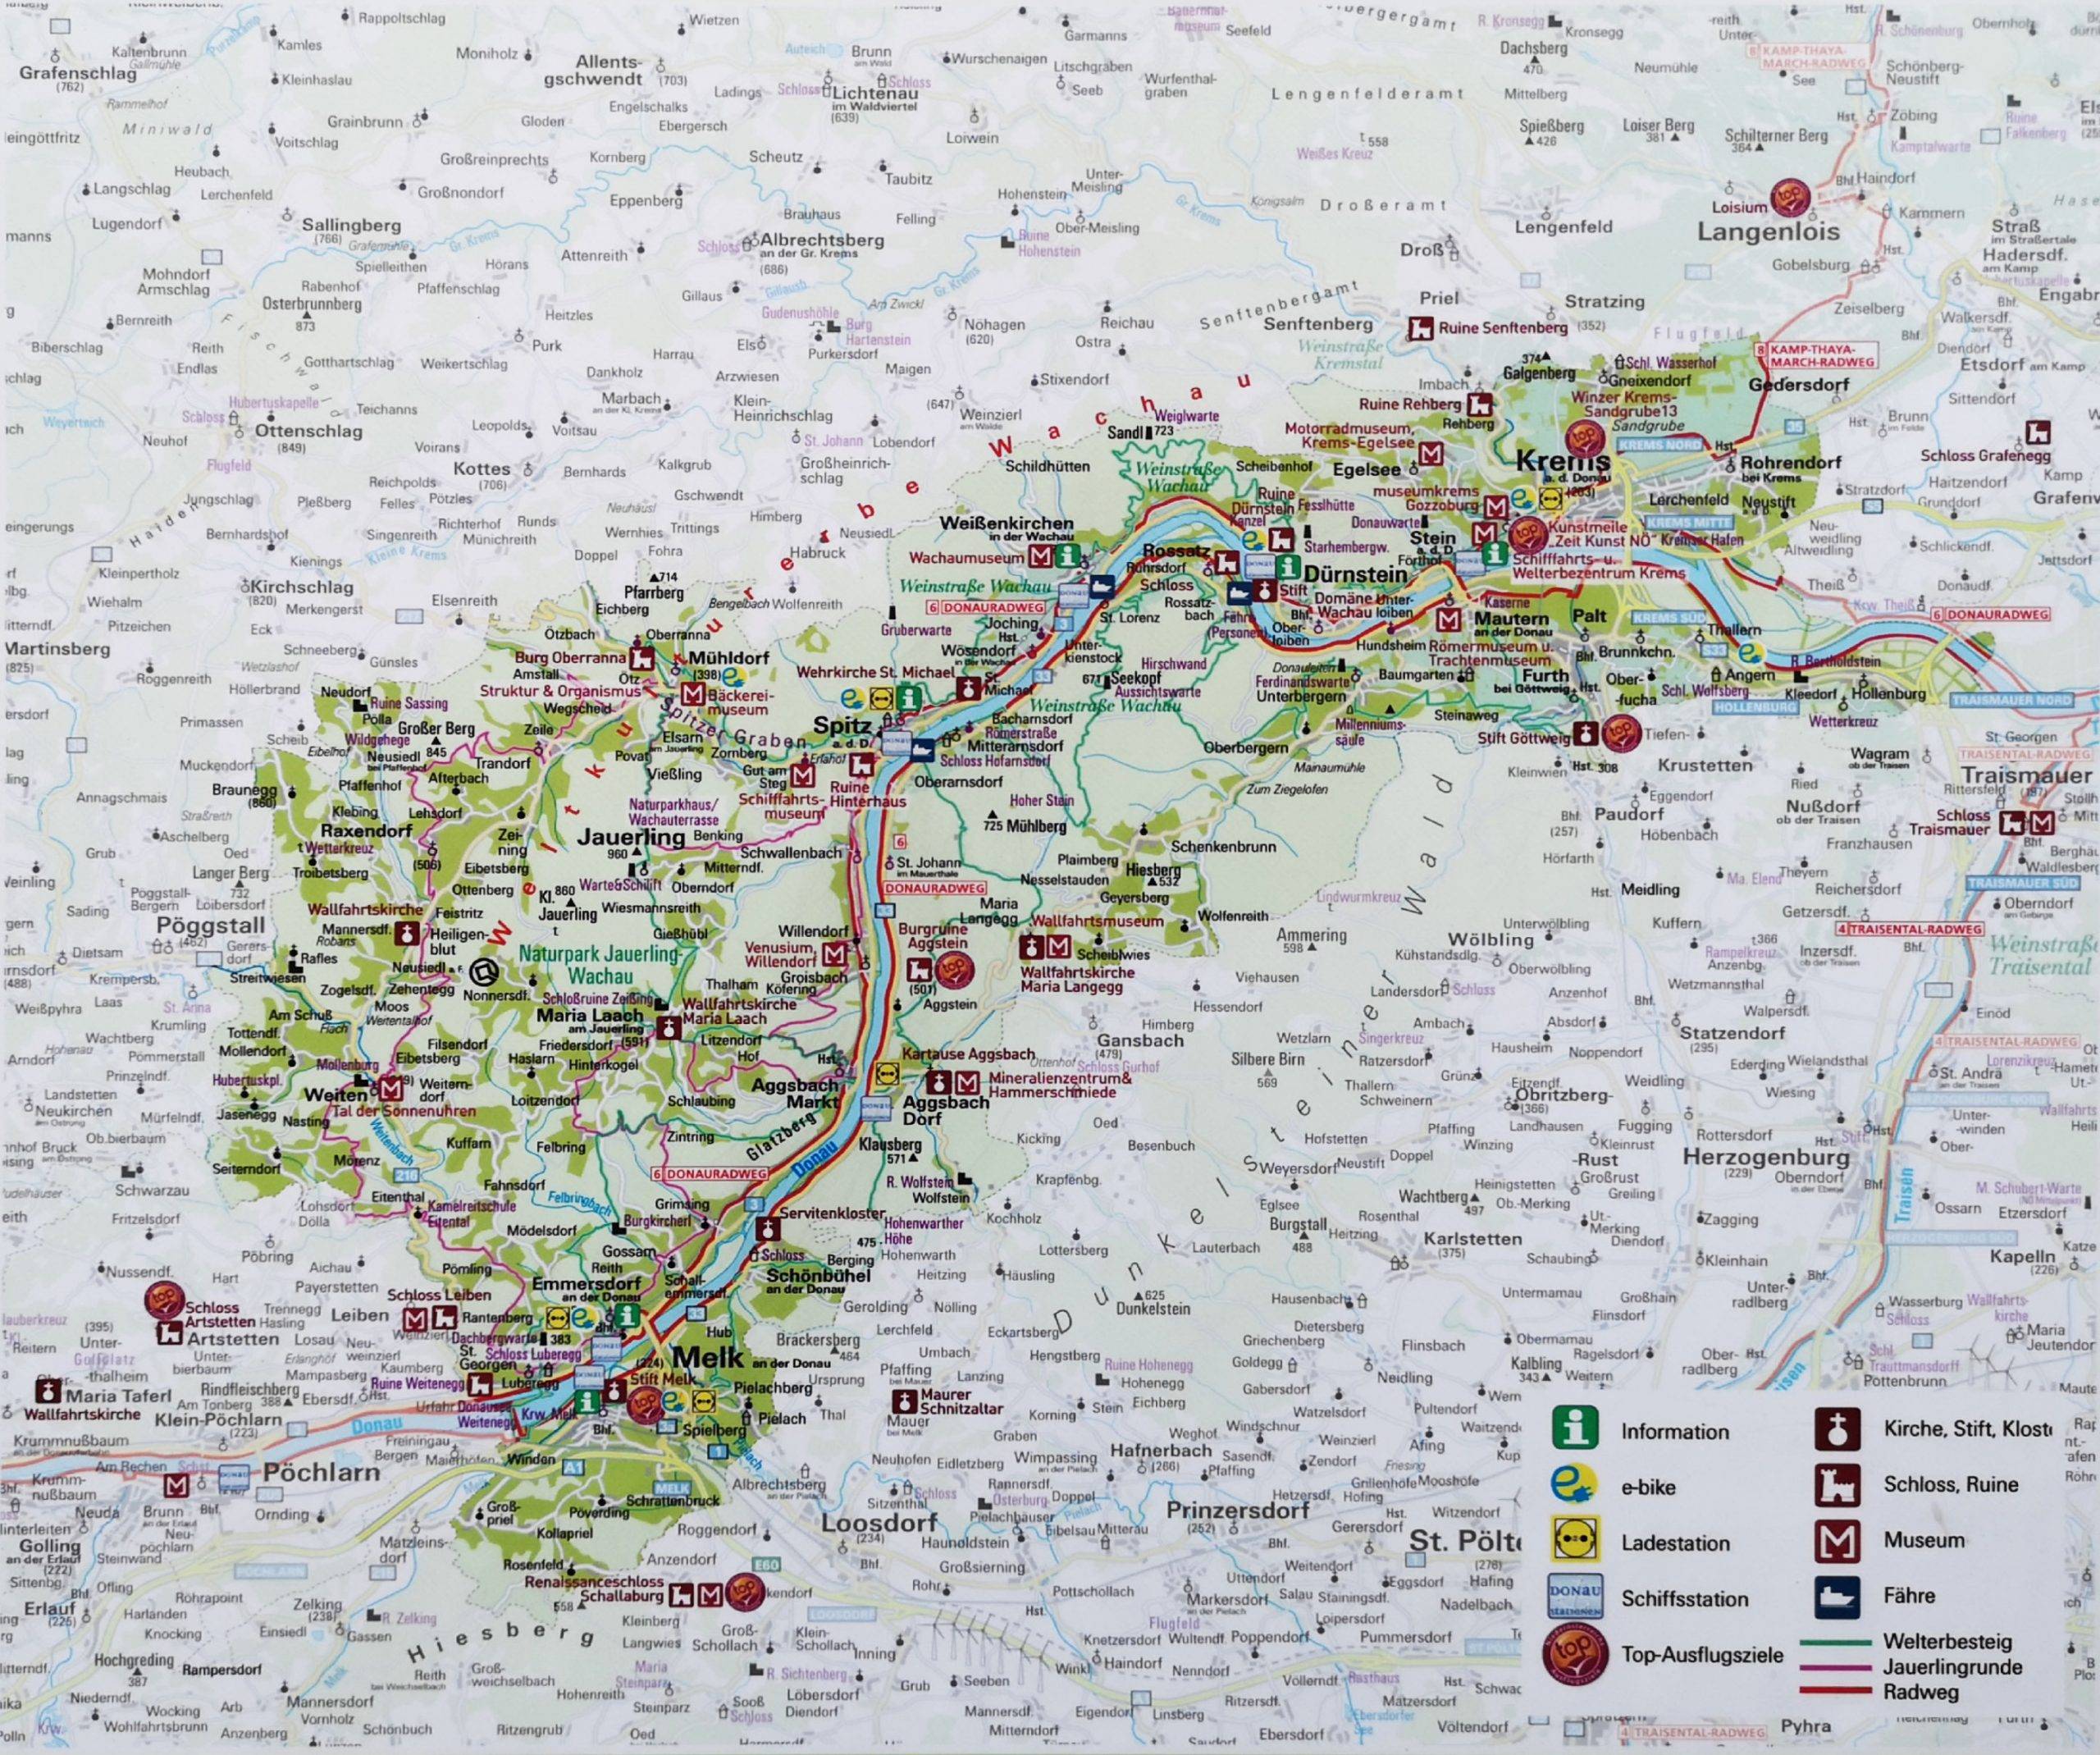 Official map of Wachau, Austria